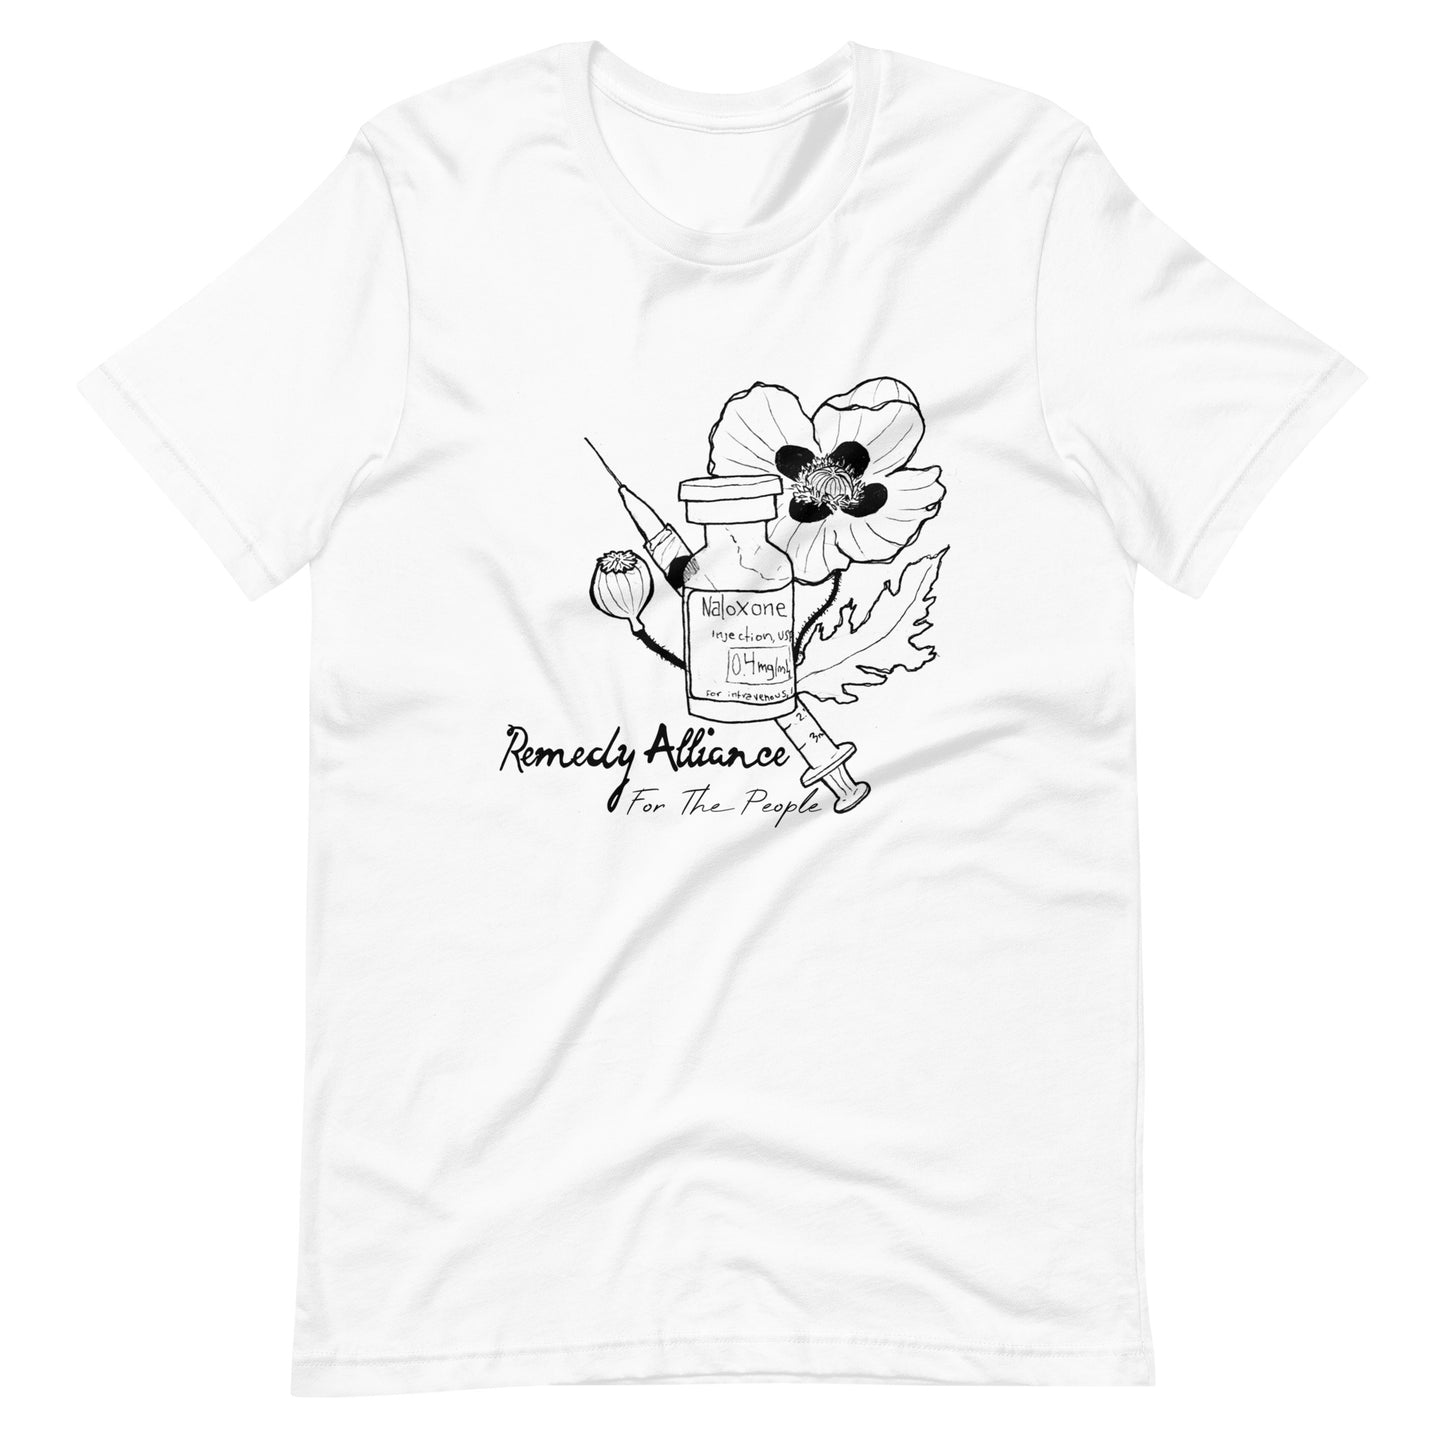 Poppy and Naloxone t-shirt